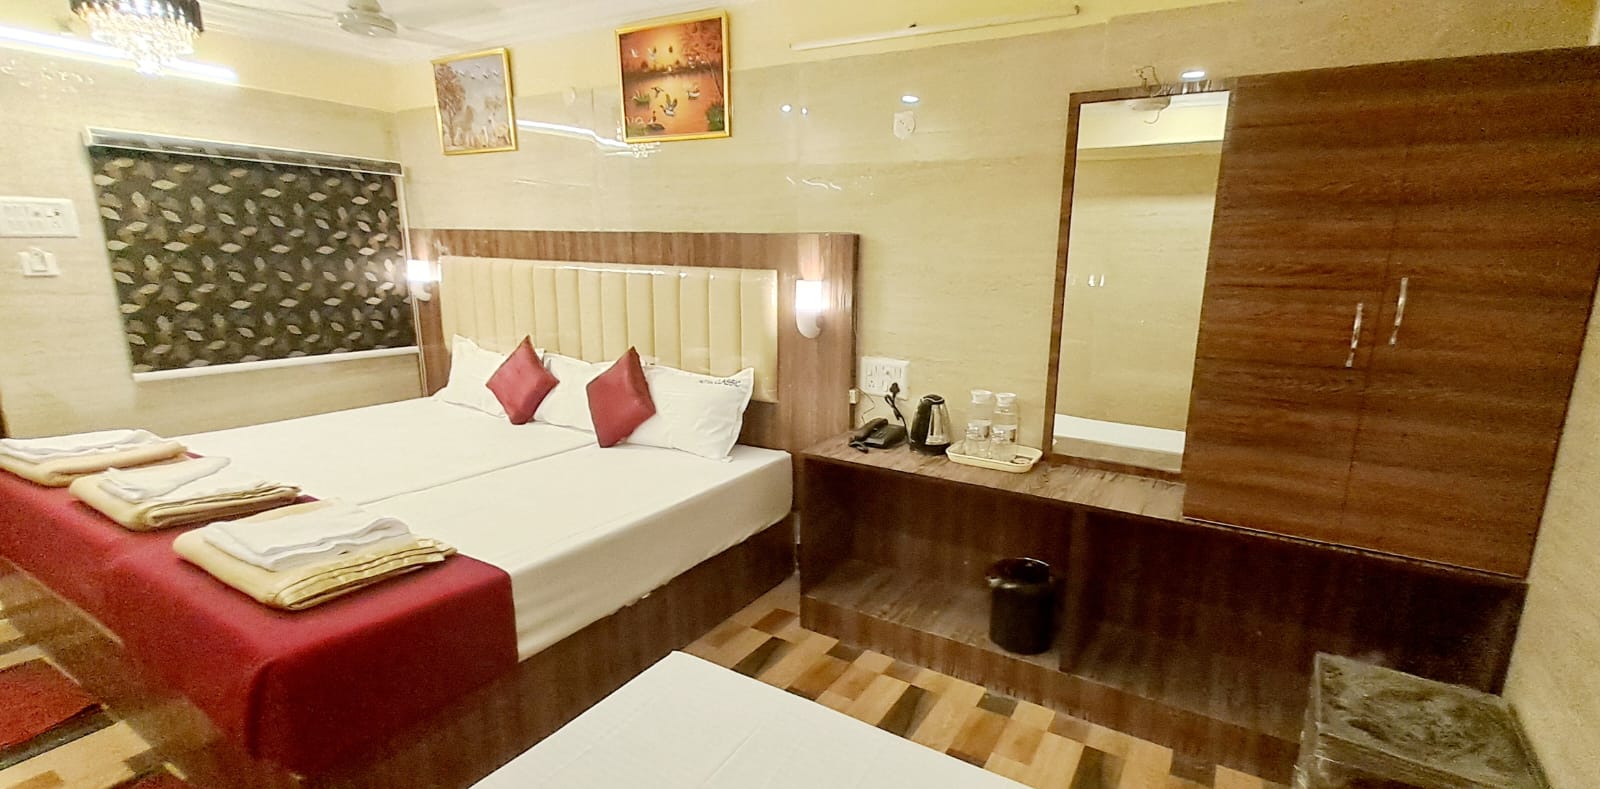 hotel classic kanchipuram - Best Family Hotel in Kanchipuram